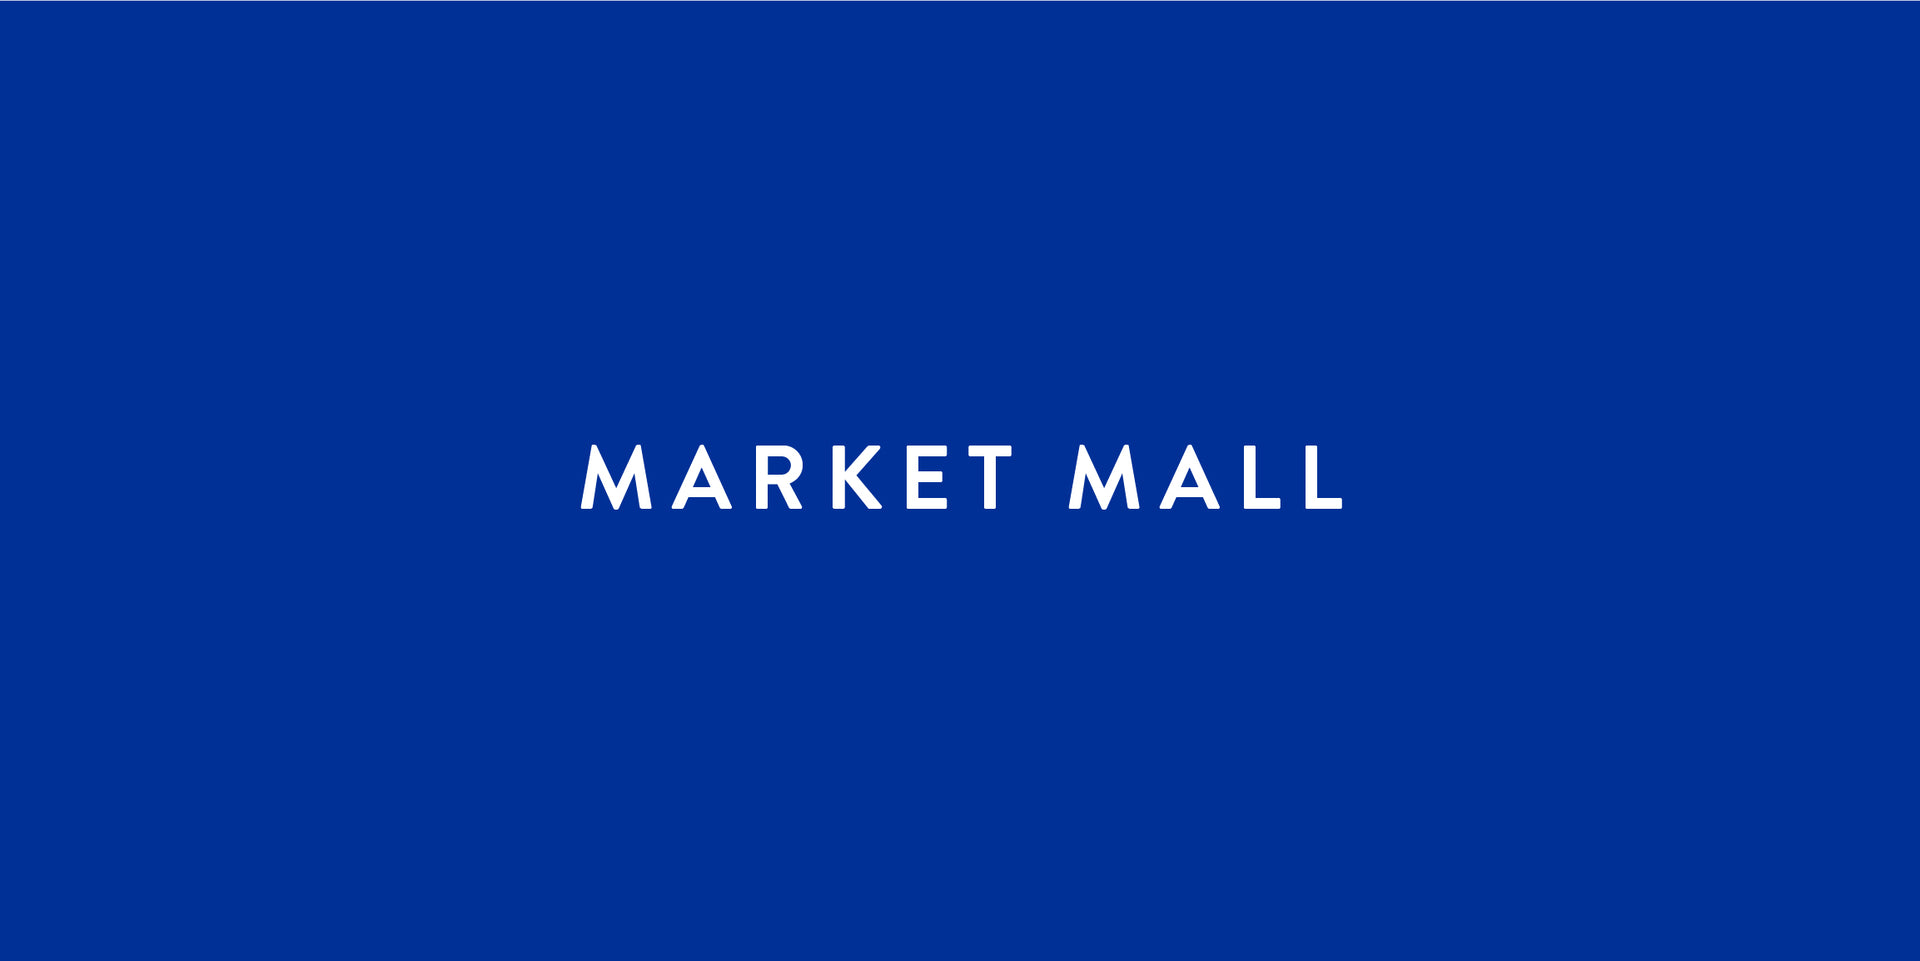 Market Mall, Calgary – Kit and Ace